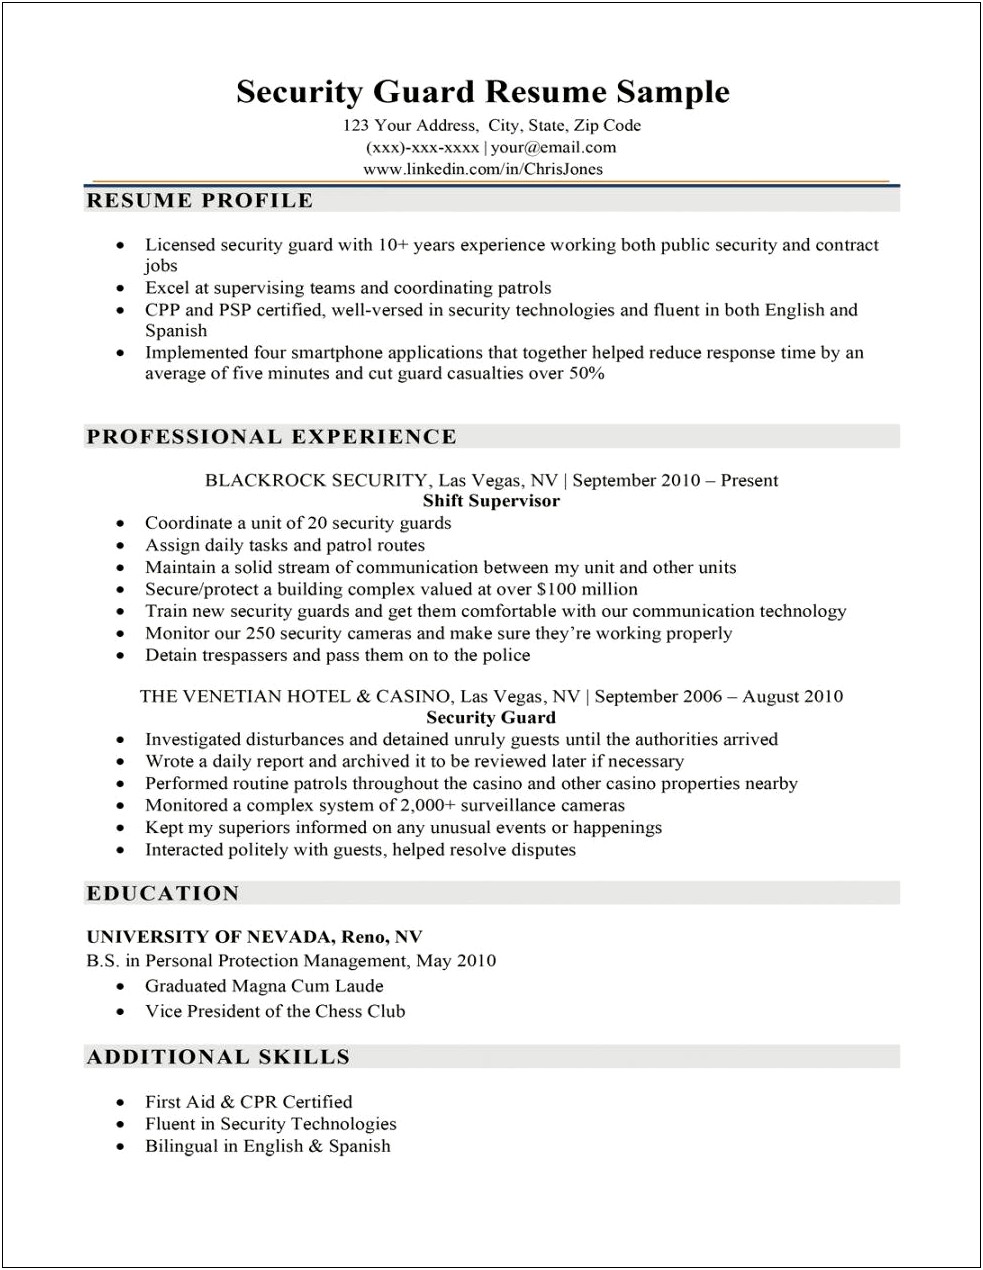 Resume Blurb For Kept Management Informed